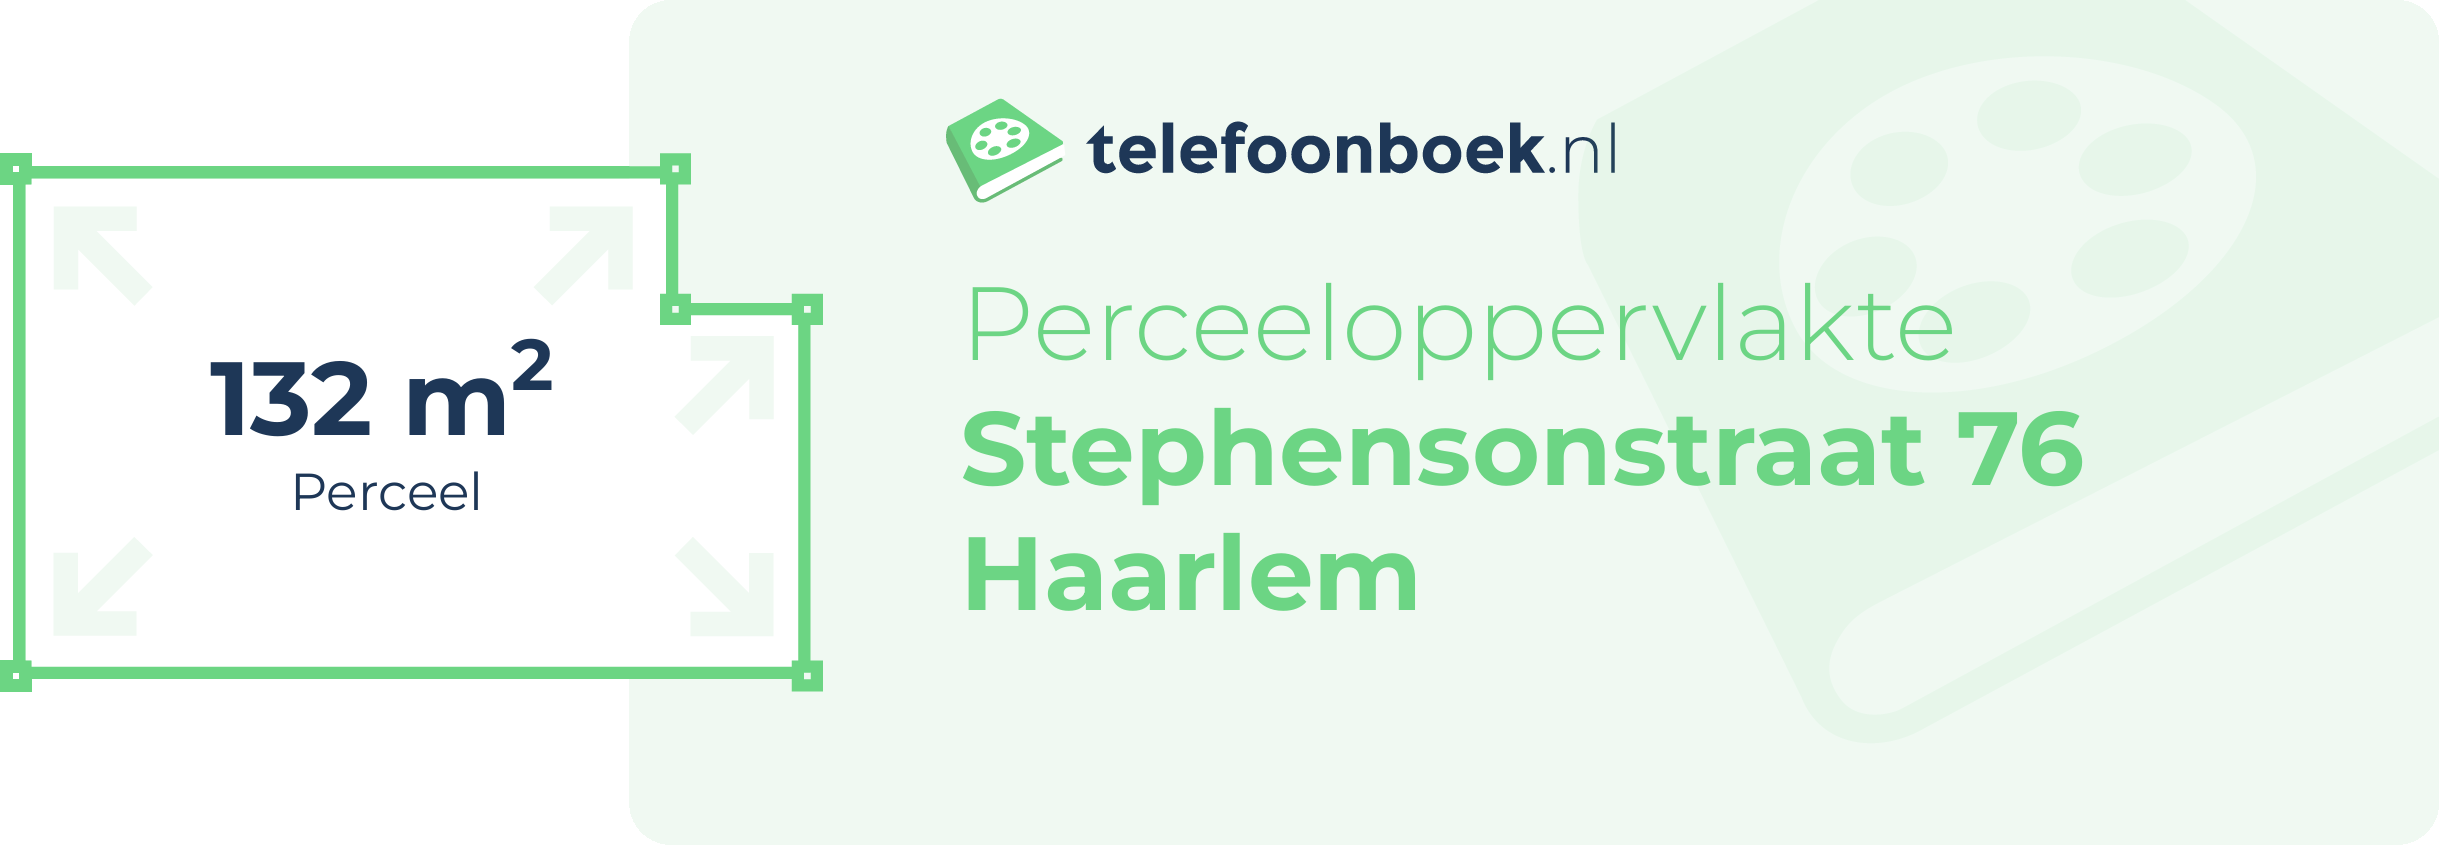 Perceeloppervlakte Stephensonstraat 76 Haarlem